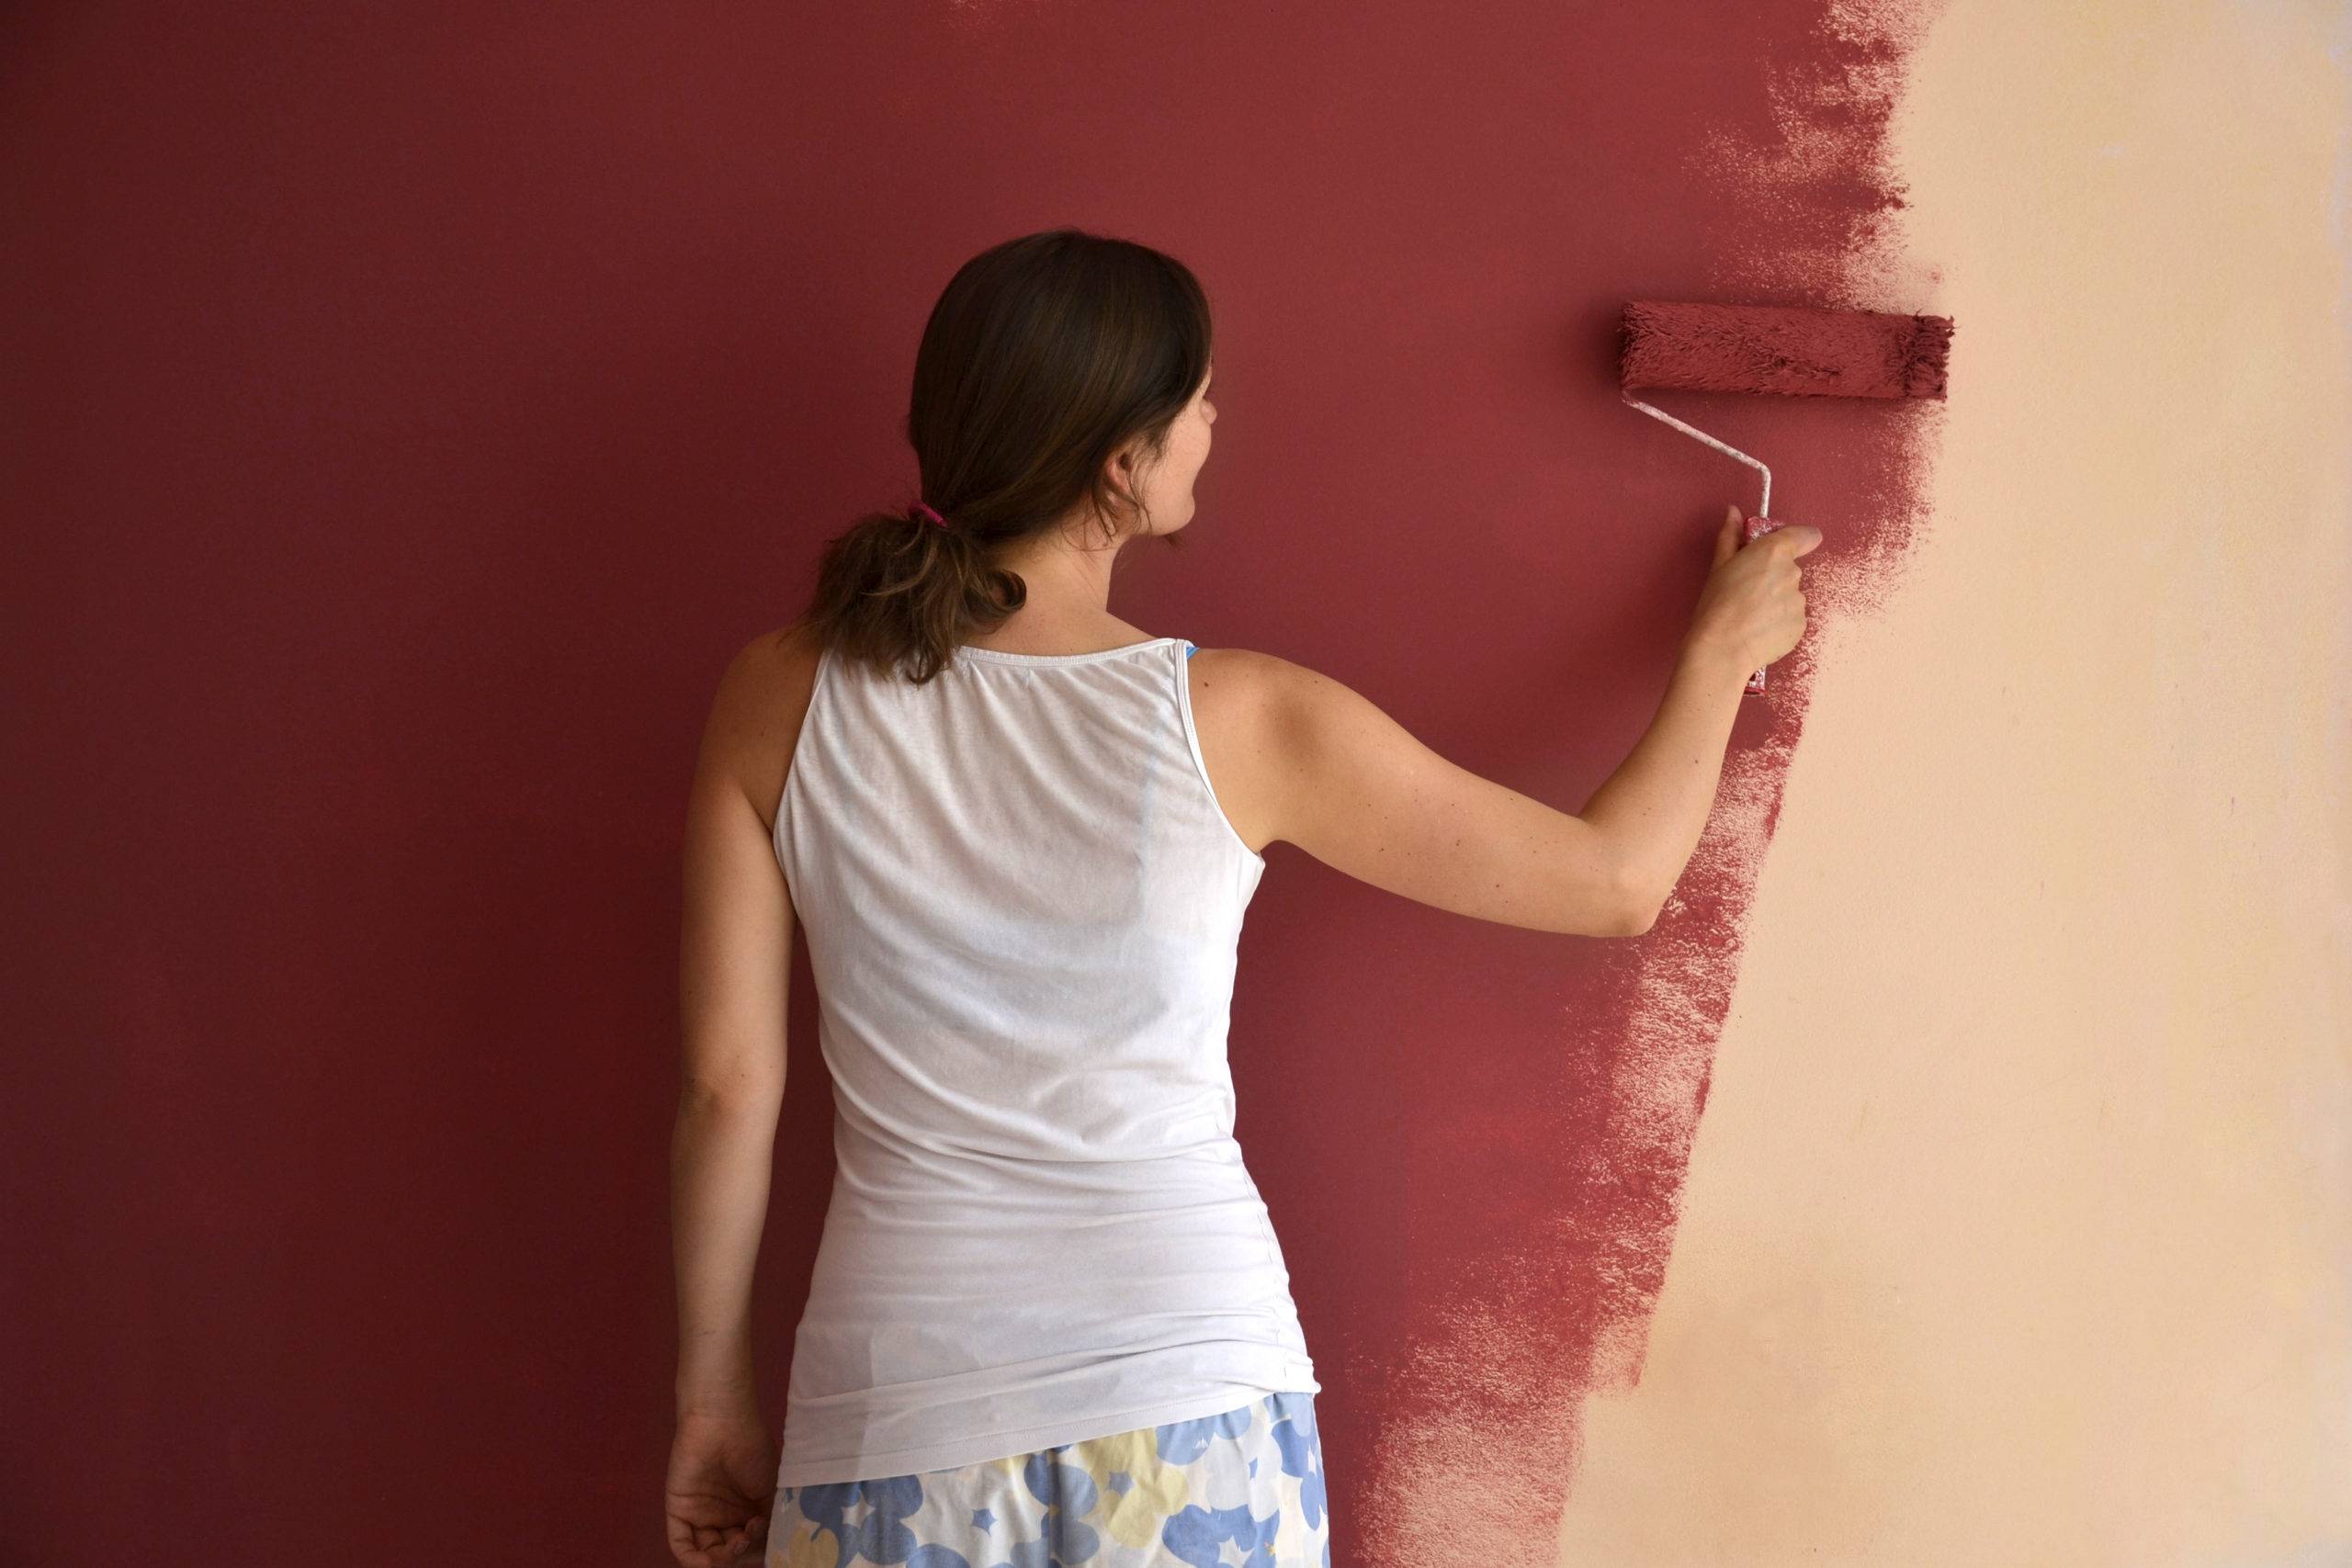 Краска для стен в квартире должна быть безвредной и красивой